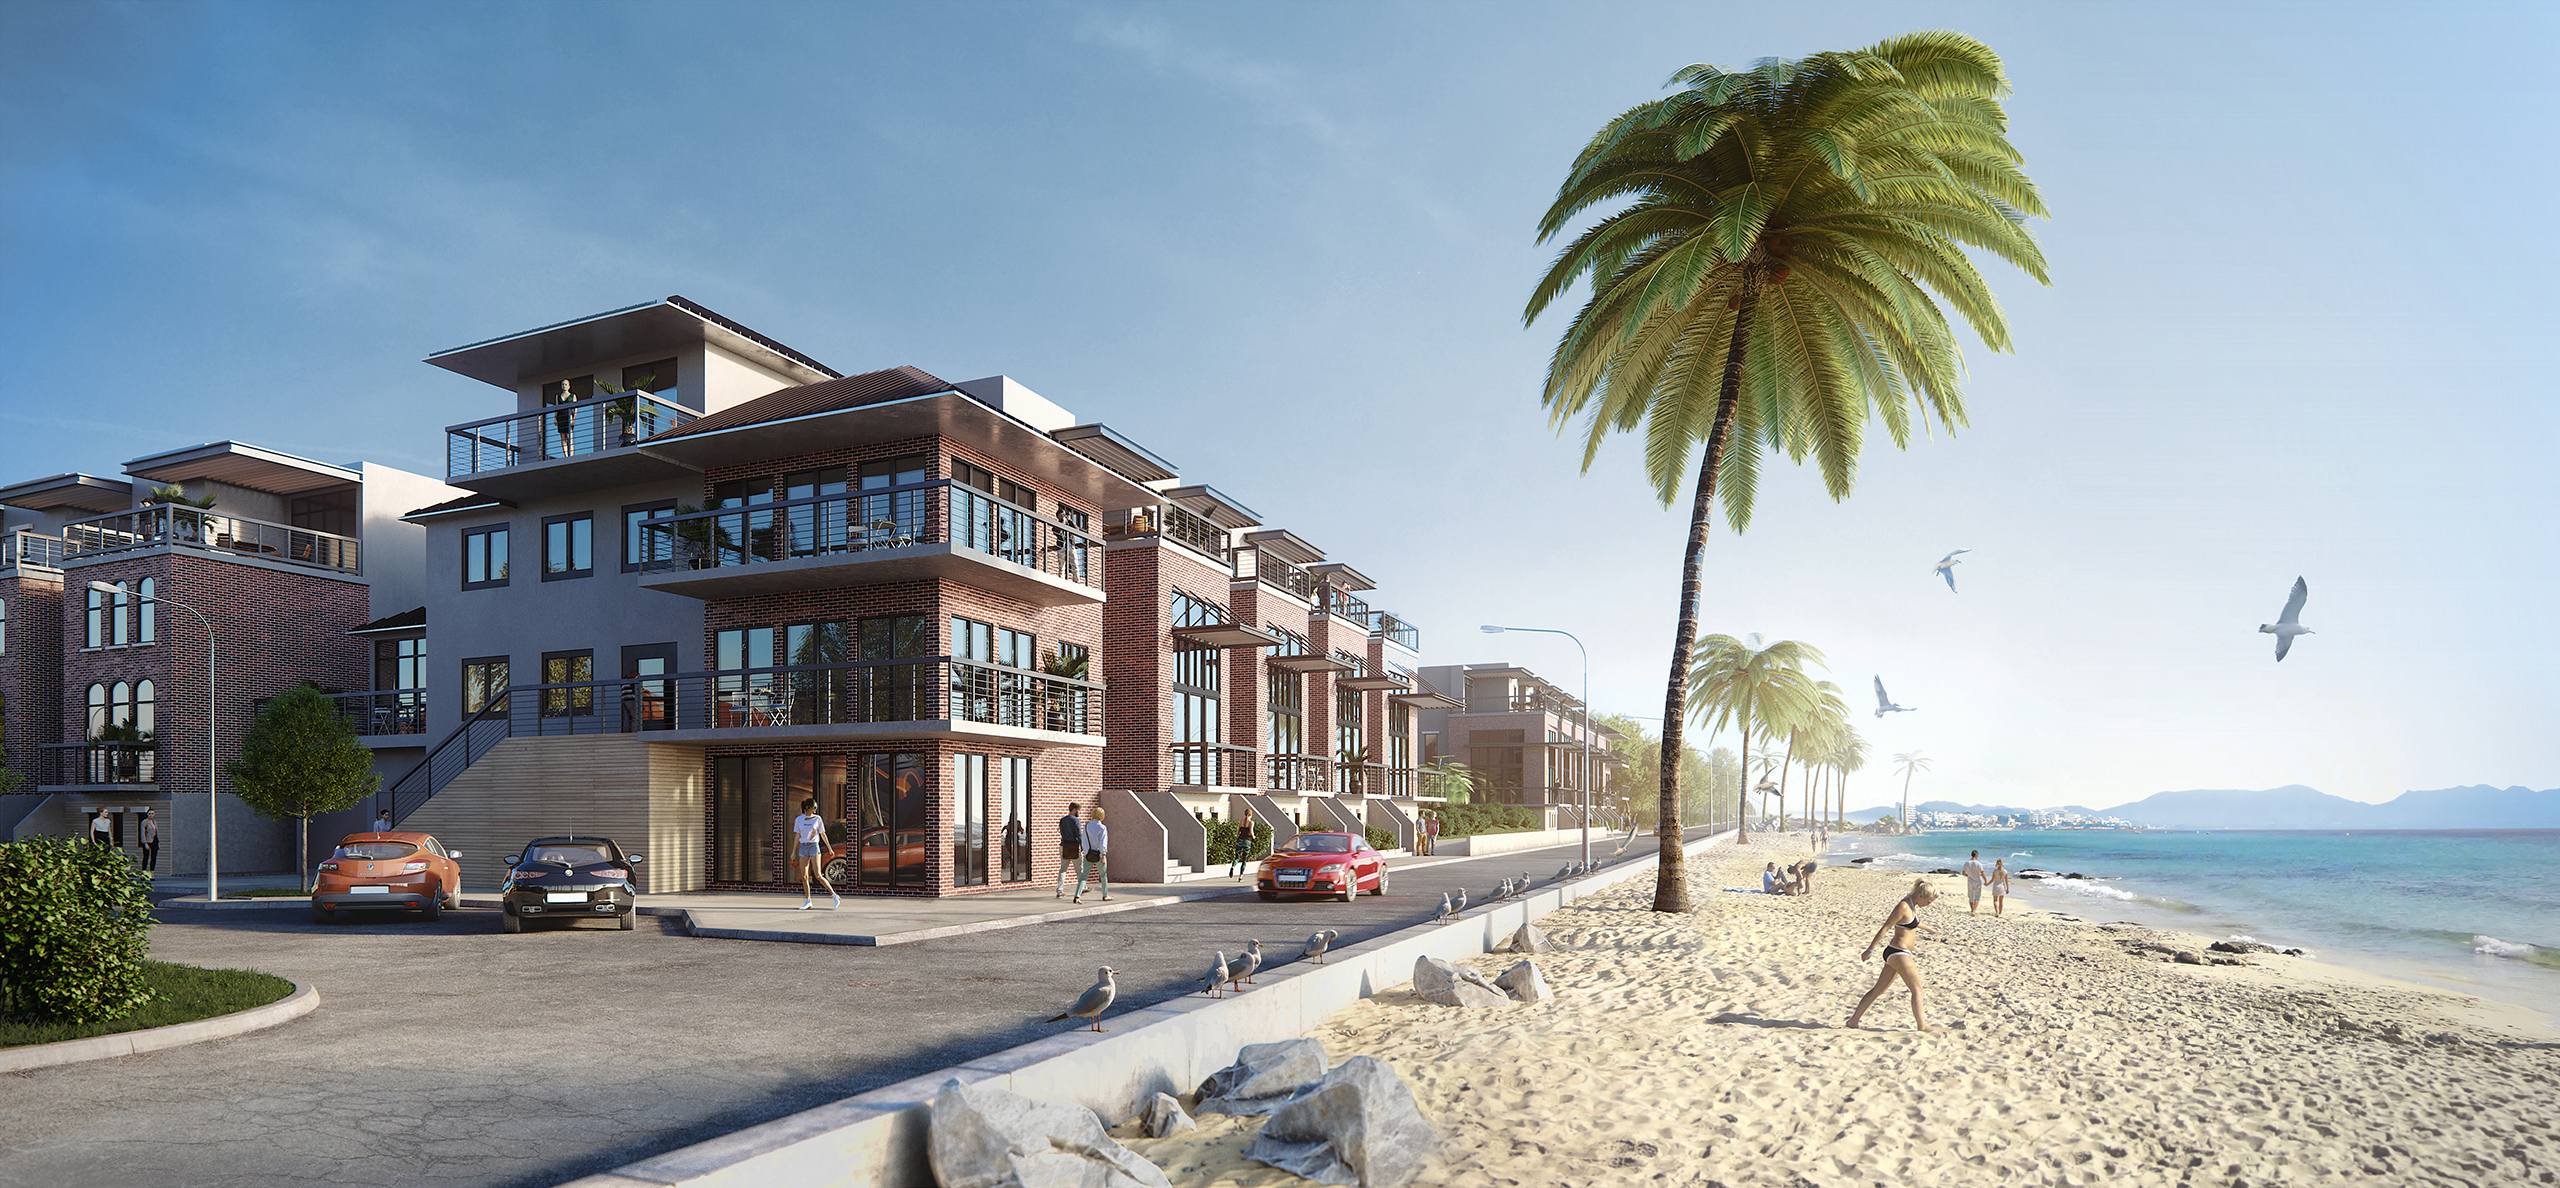 Résidence multifamiliale en rendu 3D avec une plage de sable avec des palmiers et l'océan de l'autre côté de la rue